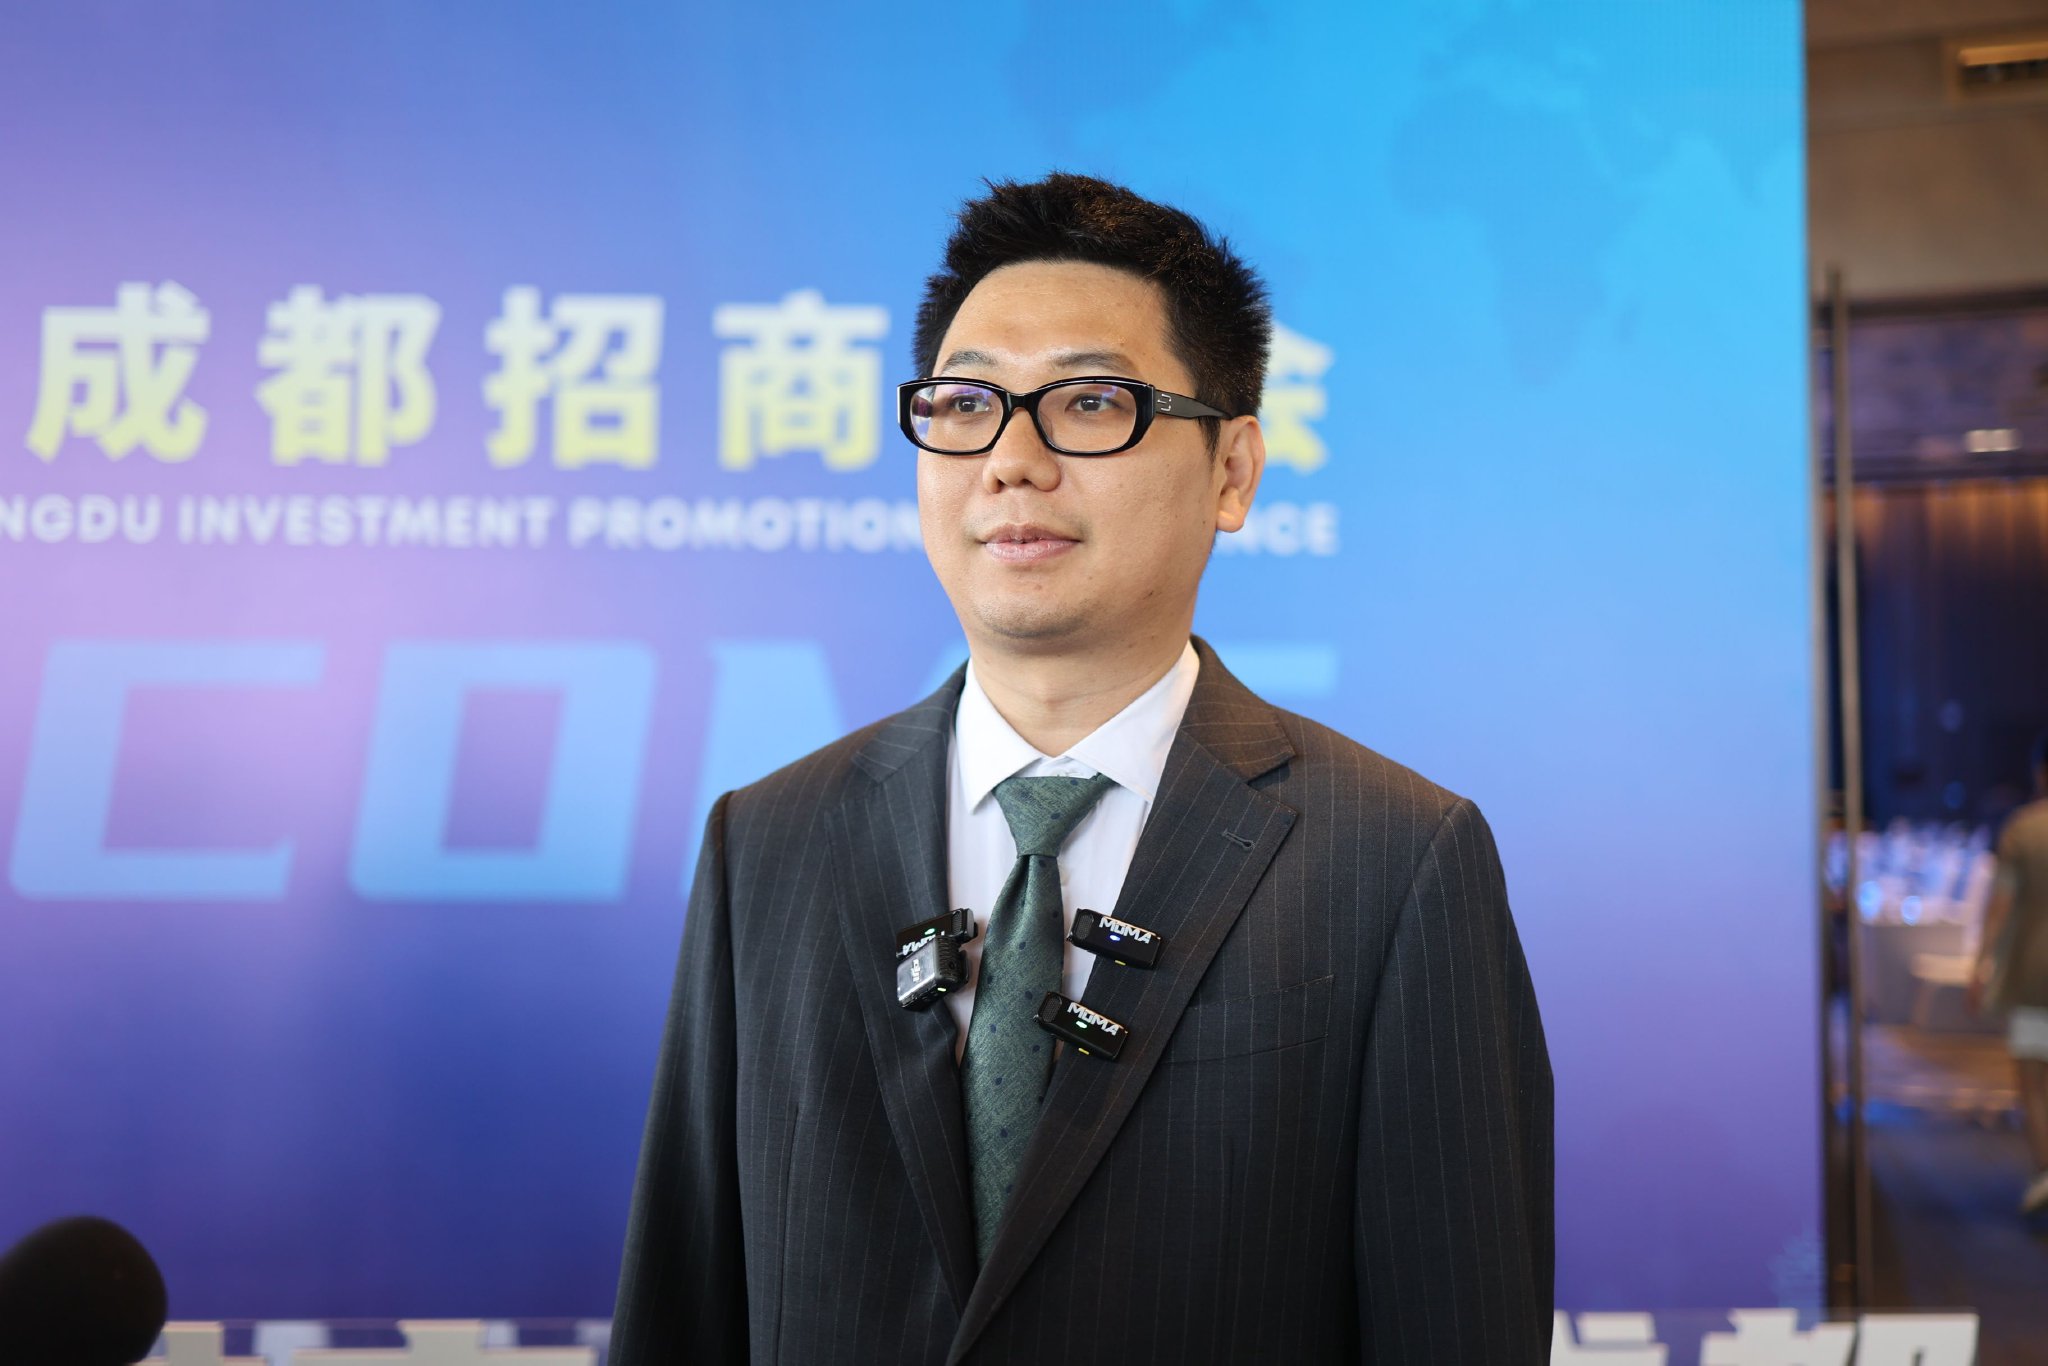 ▲深圳影目科技有限公司创始人兼CEO杨龙昇